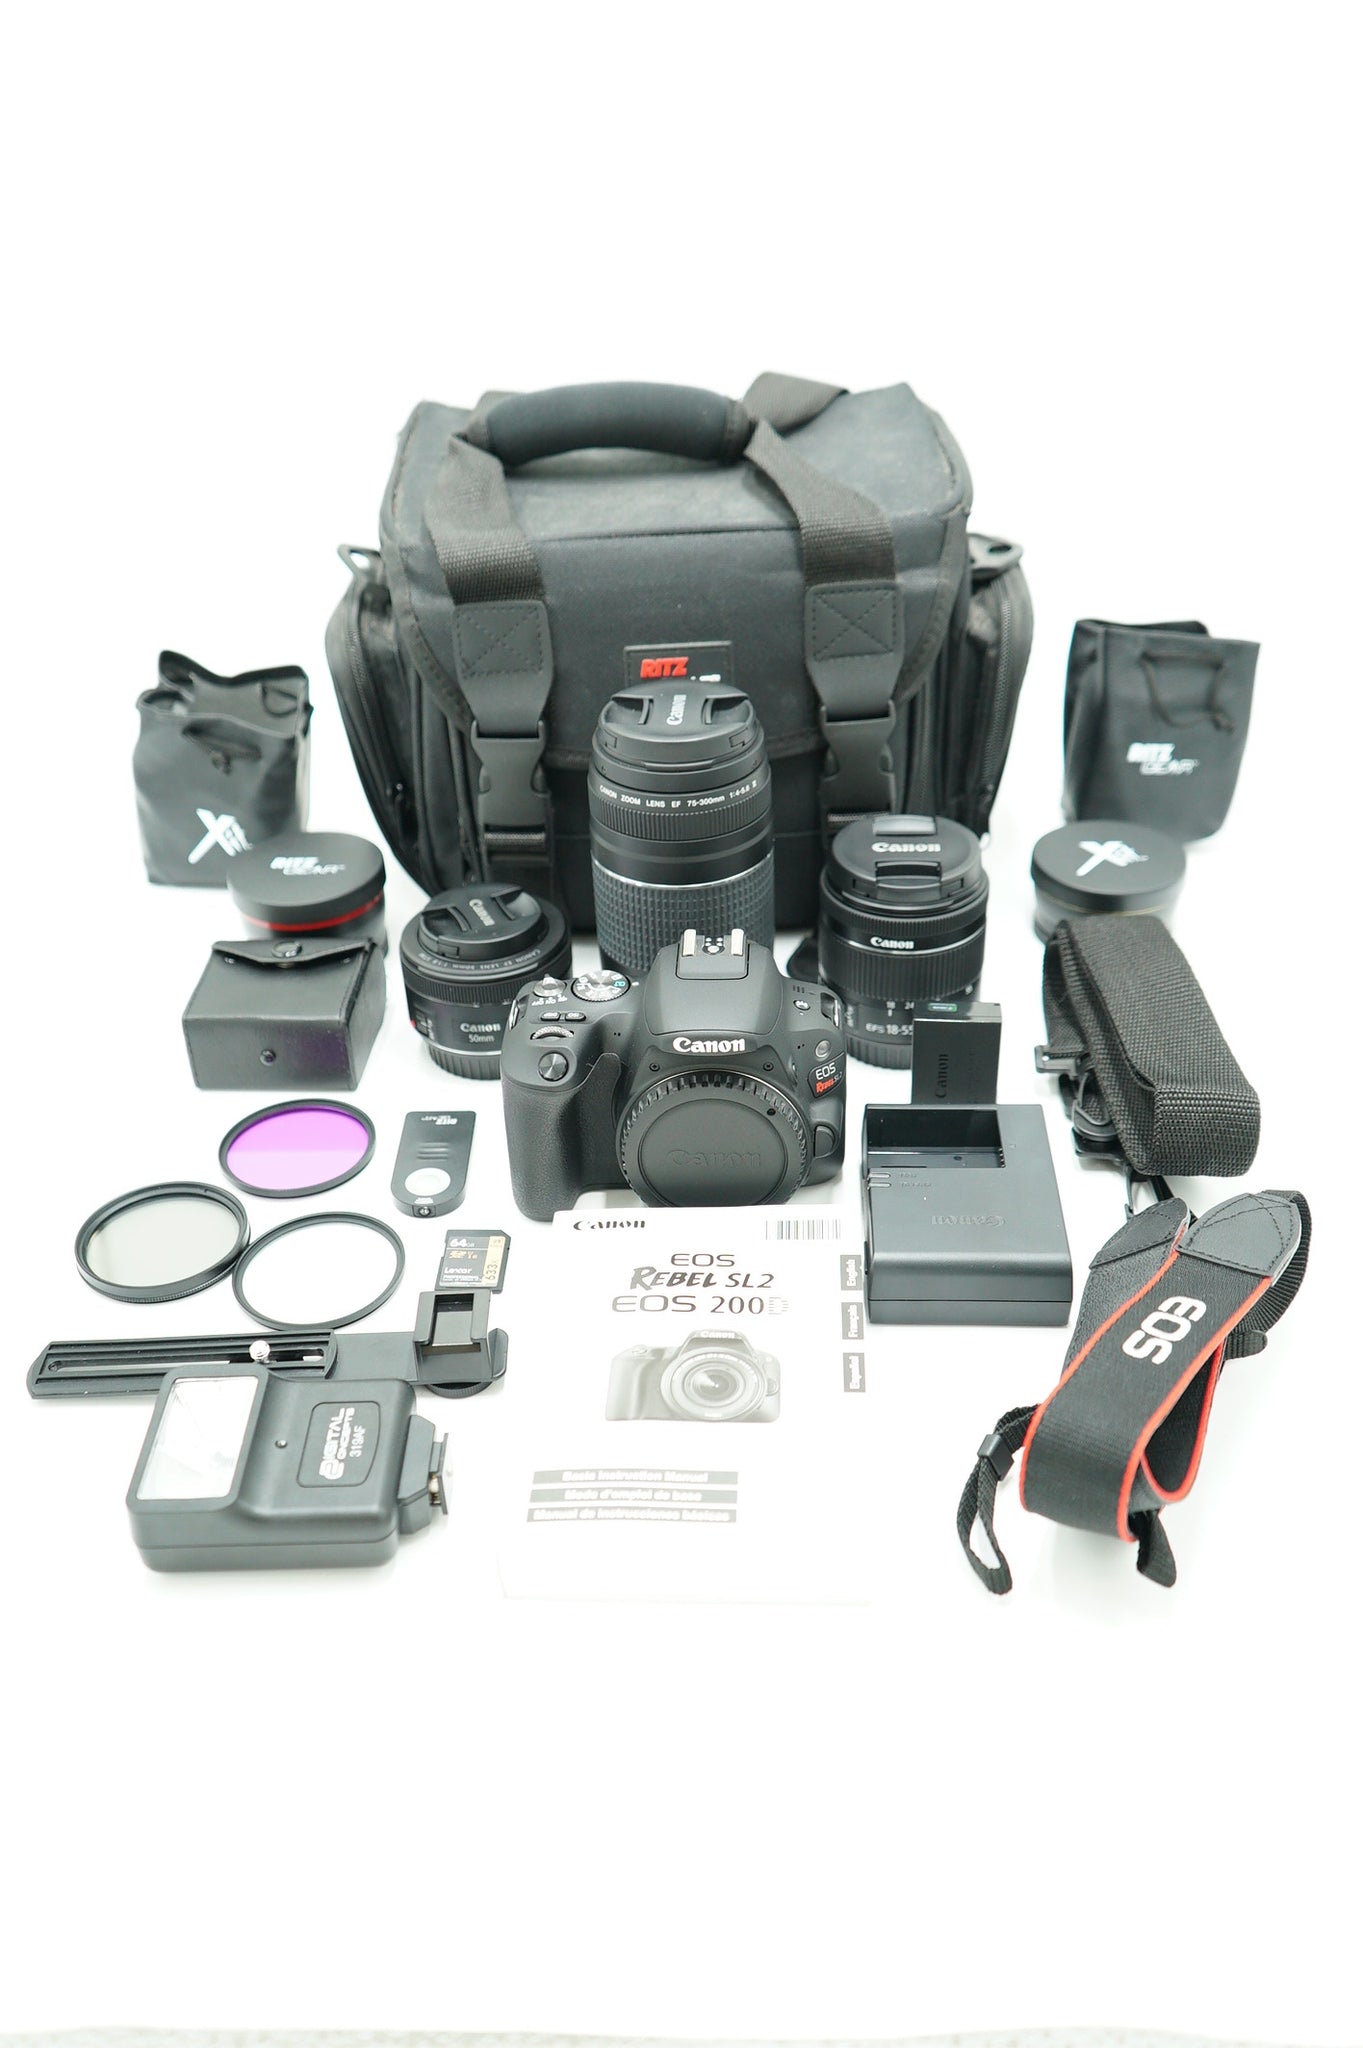 Canon EOSREBELSL2/04965 REBEL SL2 + EF-S 18-55mm + EF 50mm + EF 75-30mm, Used